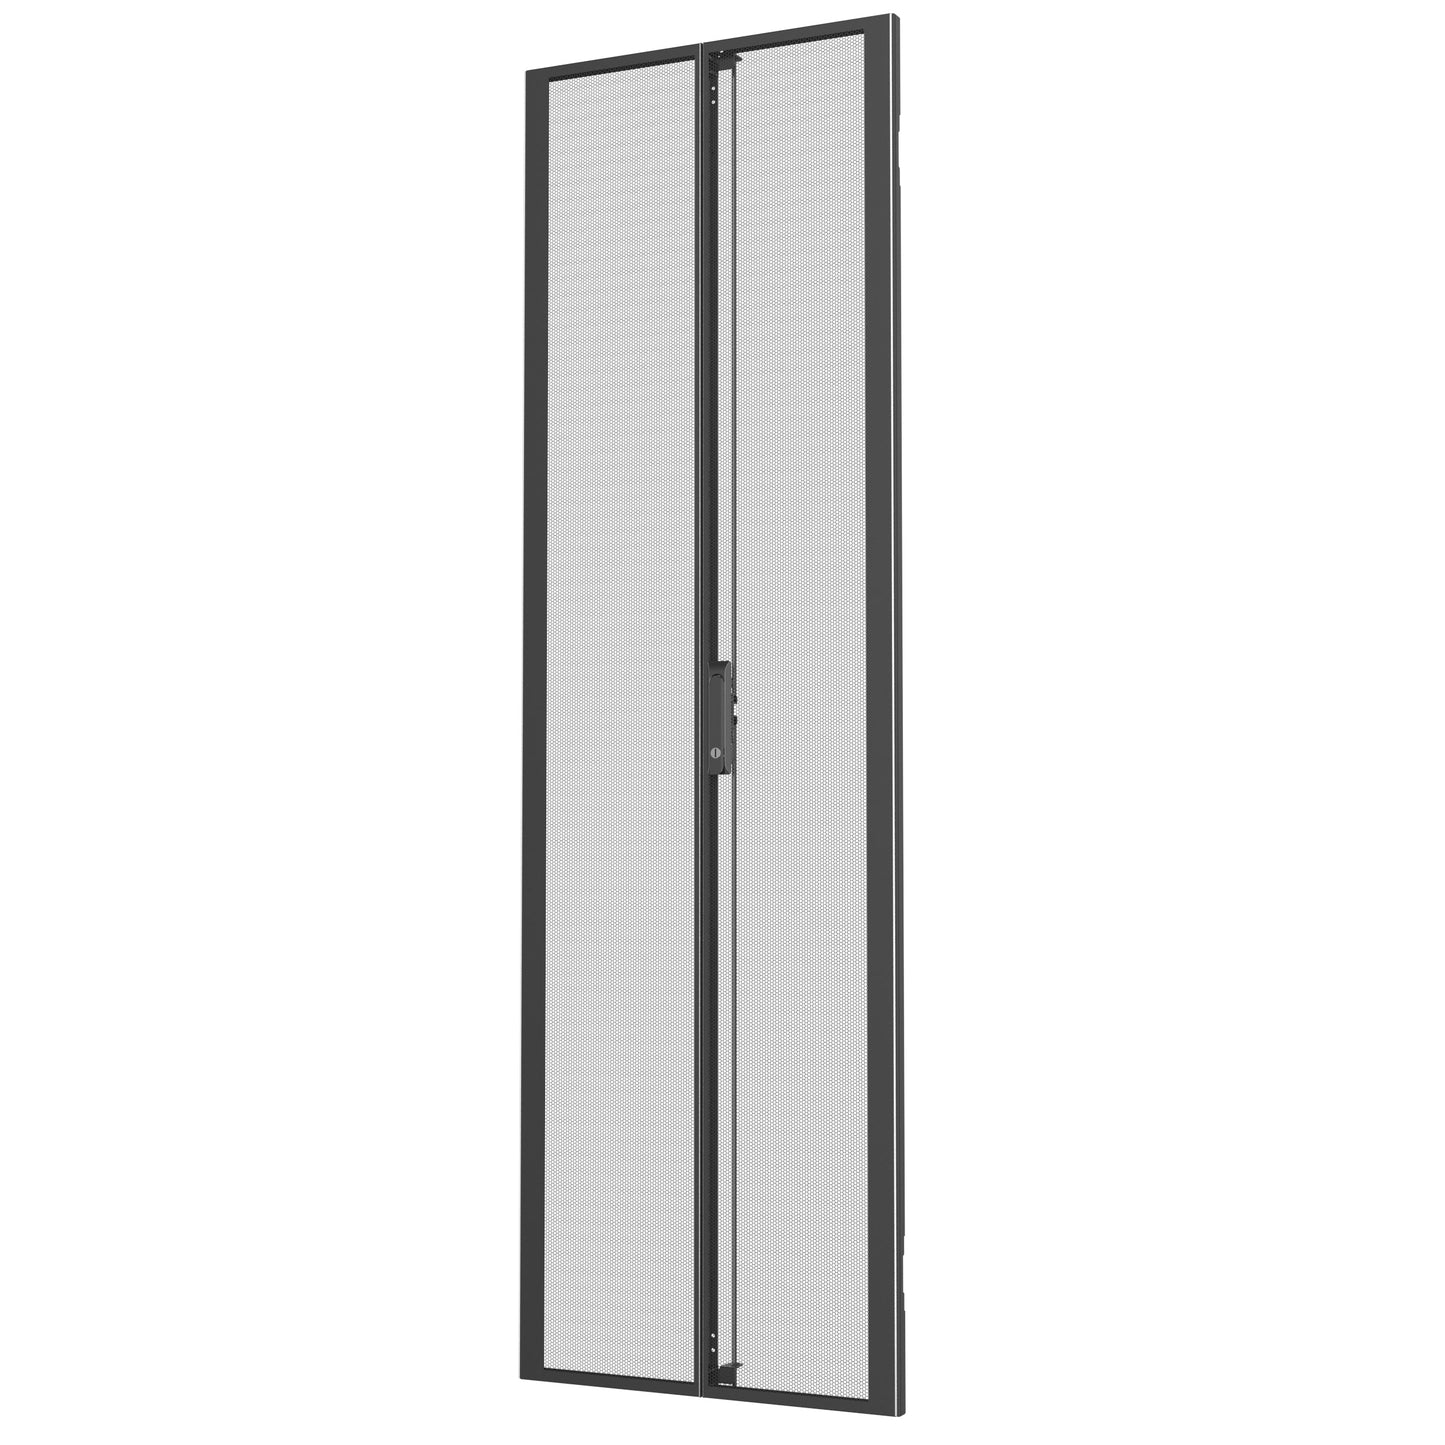 Vertiv Vra6008 Rack Accessory Double Door